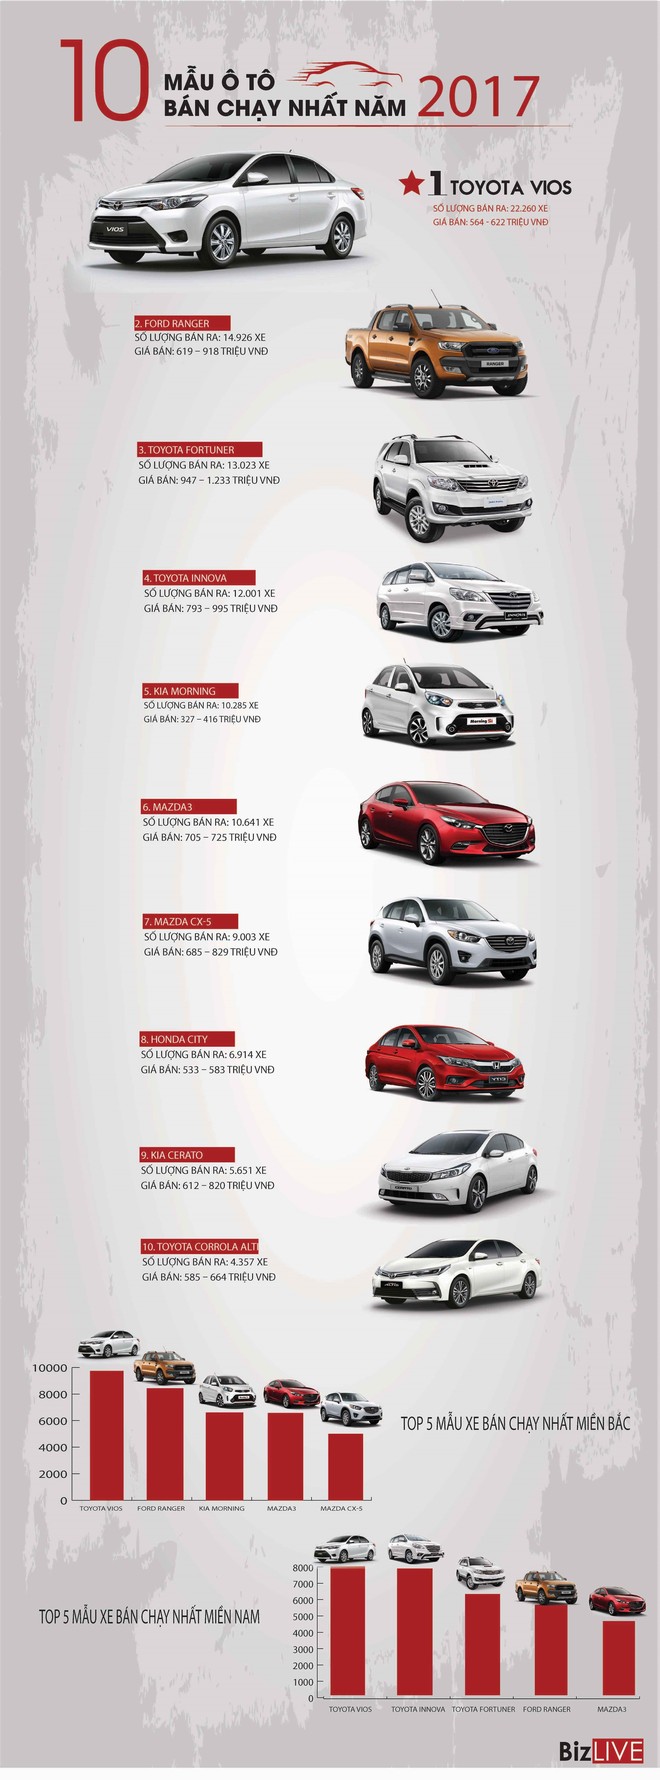 [Infographic] Sở thích mua ô tô hai miền Nam - Bắc khác nhau như thế nào? - Ảnh 1.